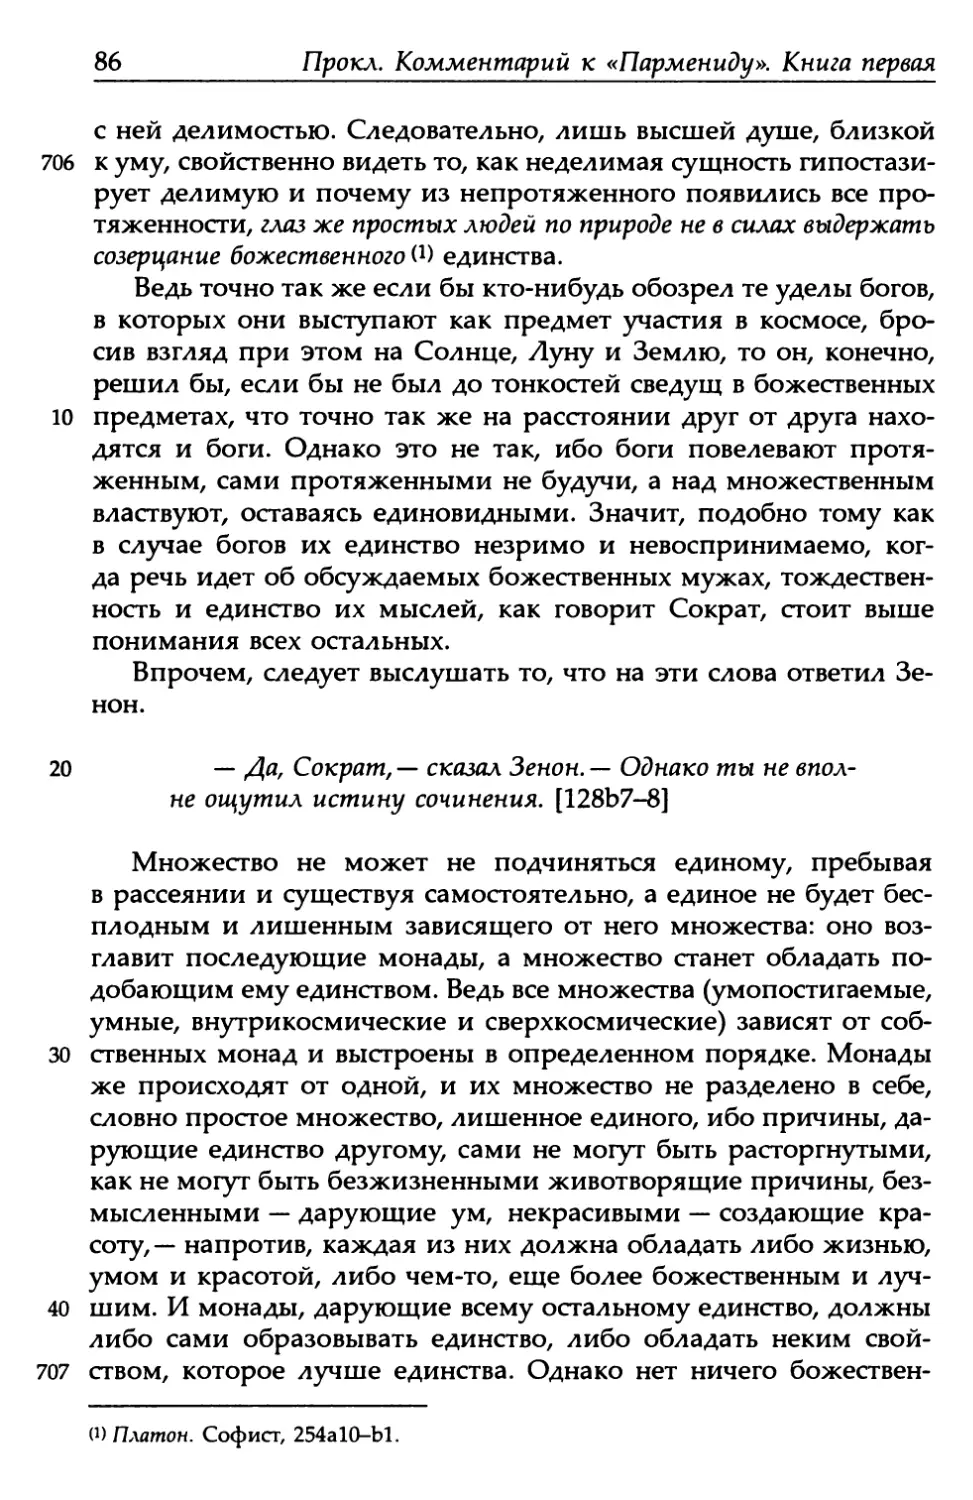 «Парменид», 128b7-8